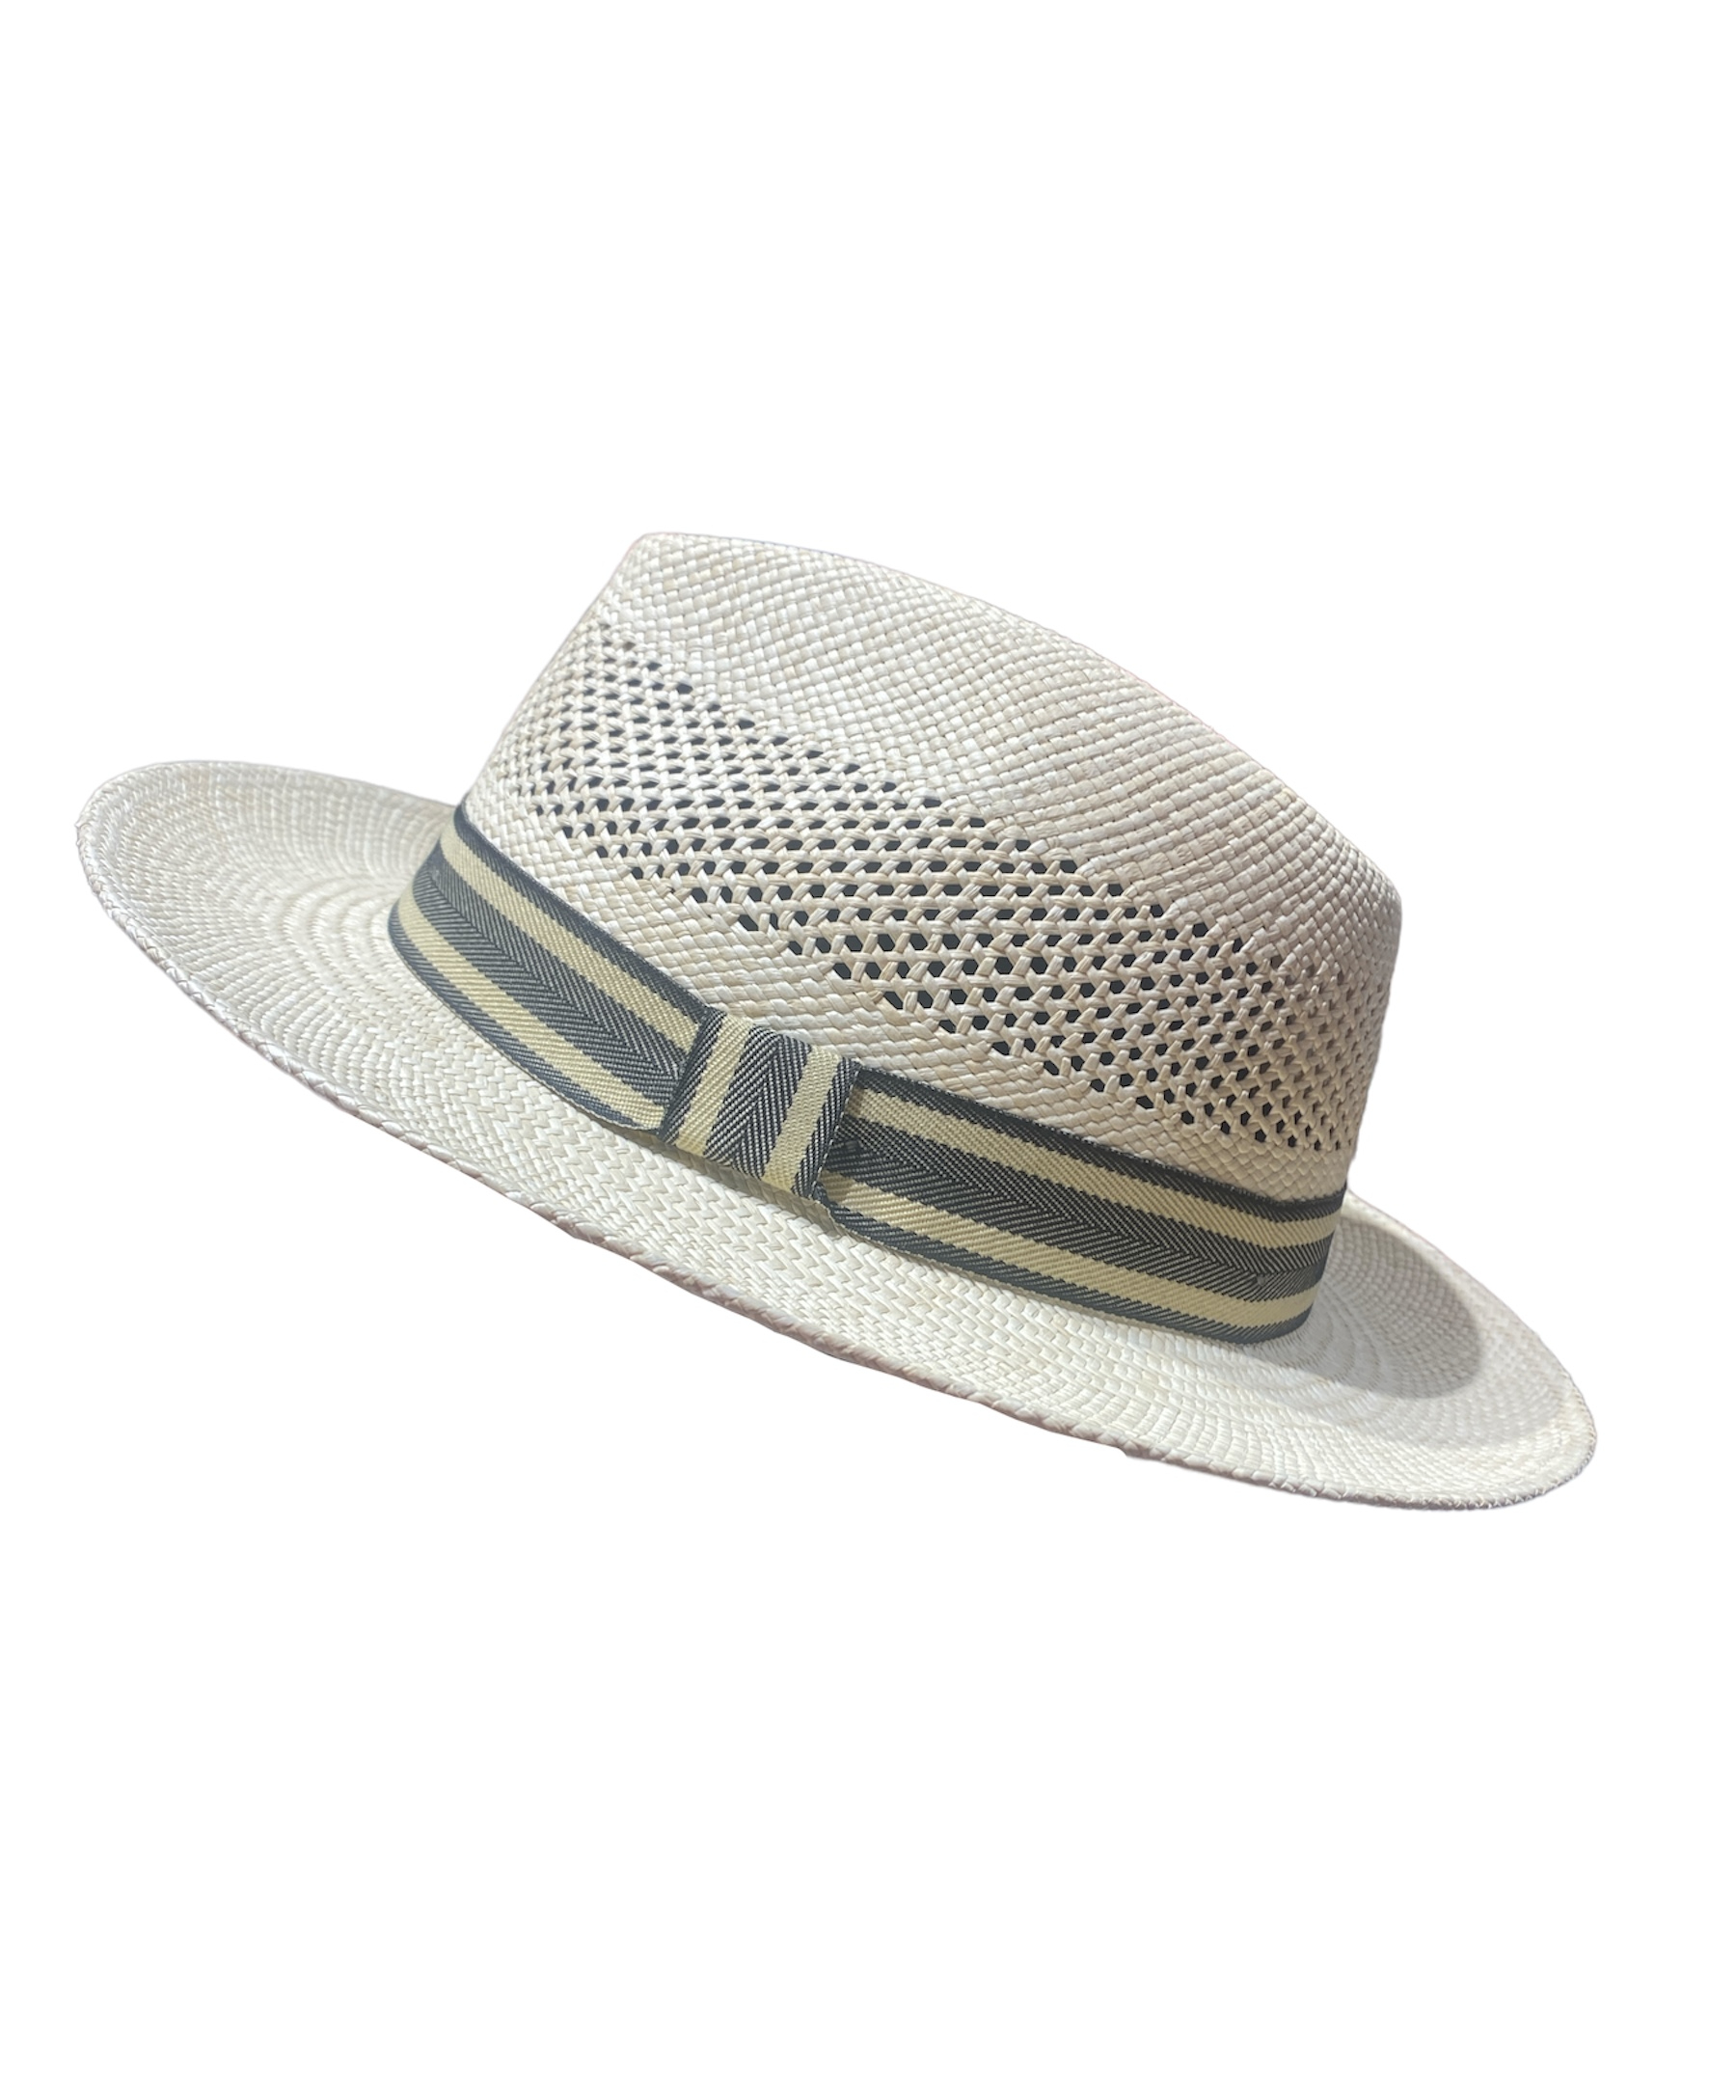 Chapeau Panama Europea avec ganse blanche et grise, disponible en taille 55, 57, 59, 61 et 62